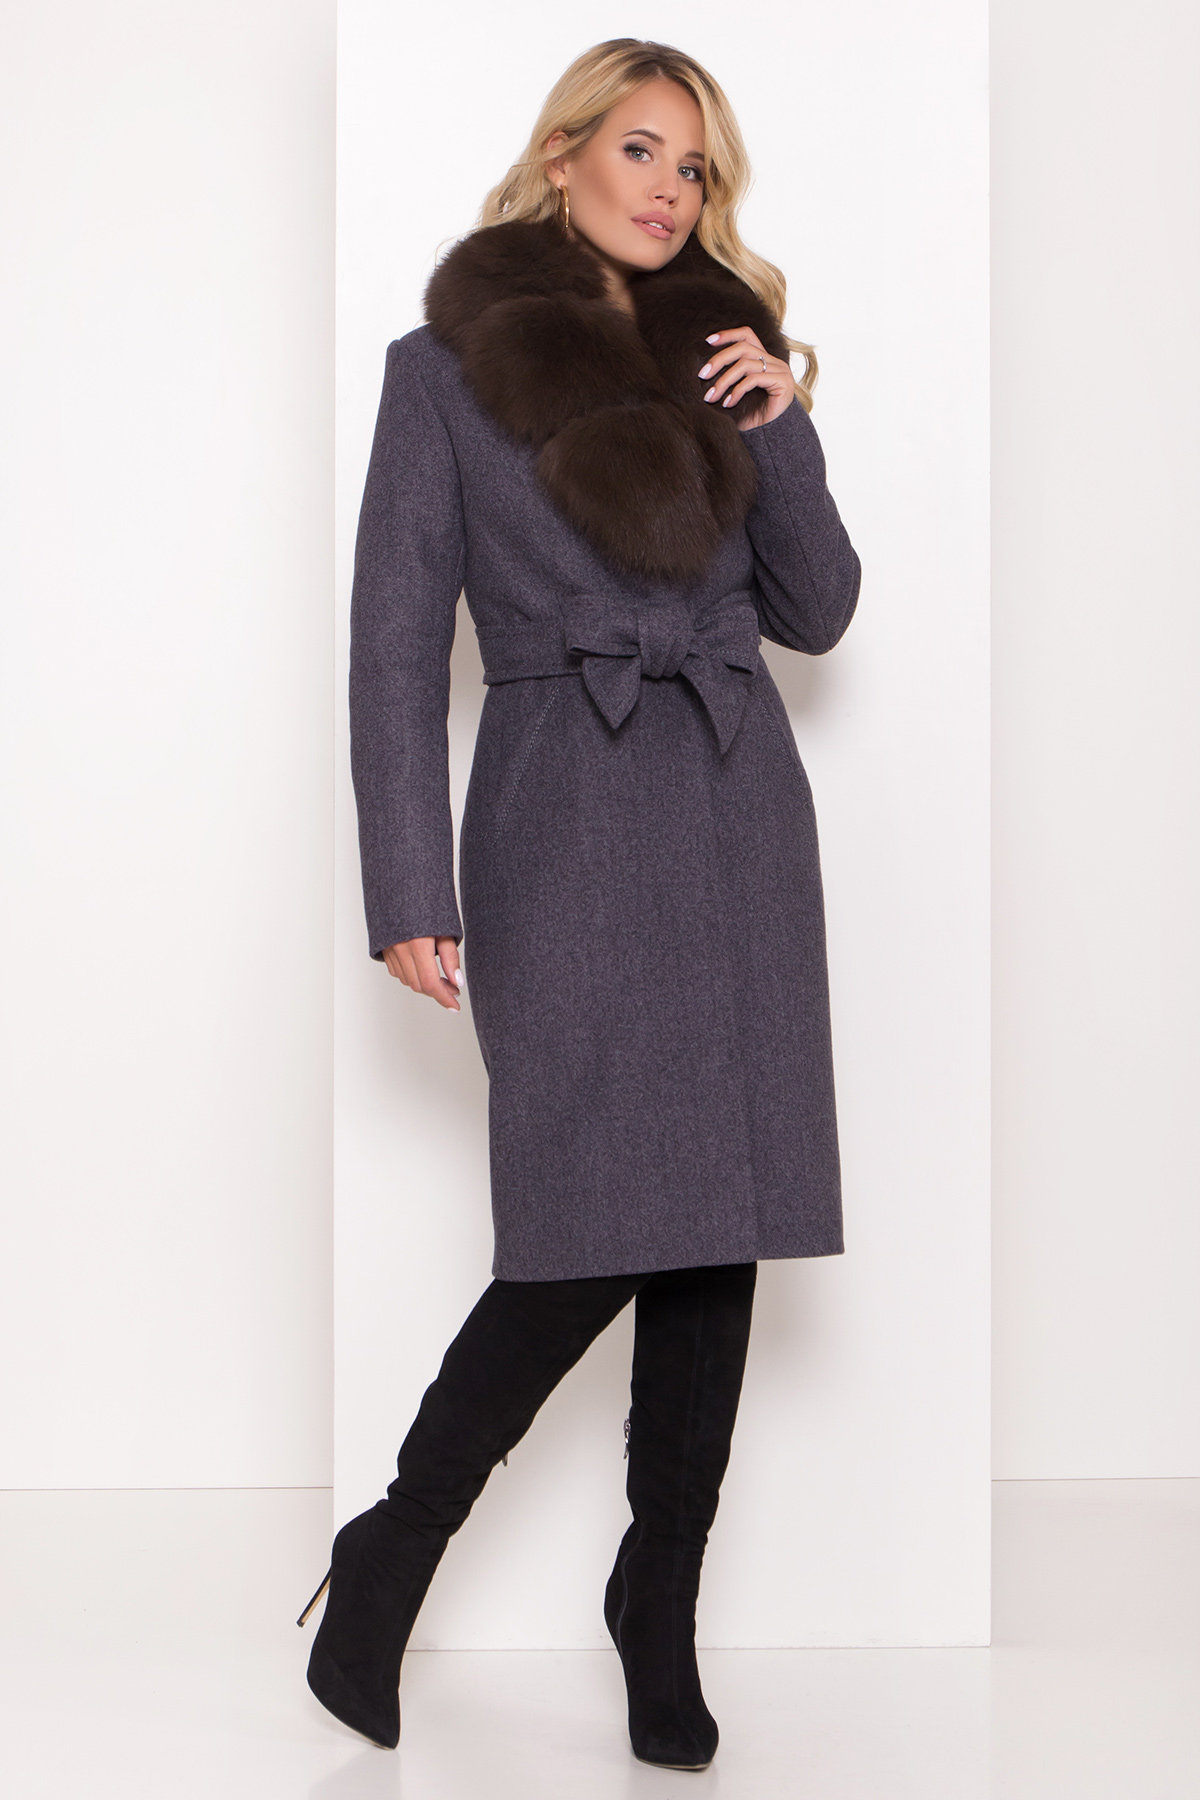 Зимнее пальто женское купить Украина Серое стильное пальто зима с меховым воротником Камила классик 8165